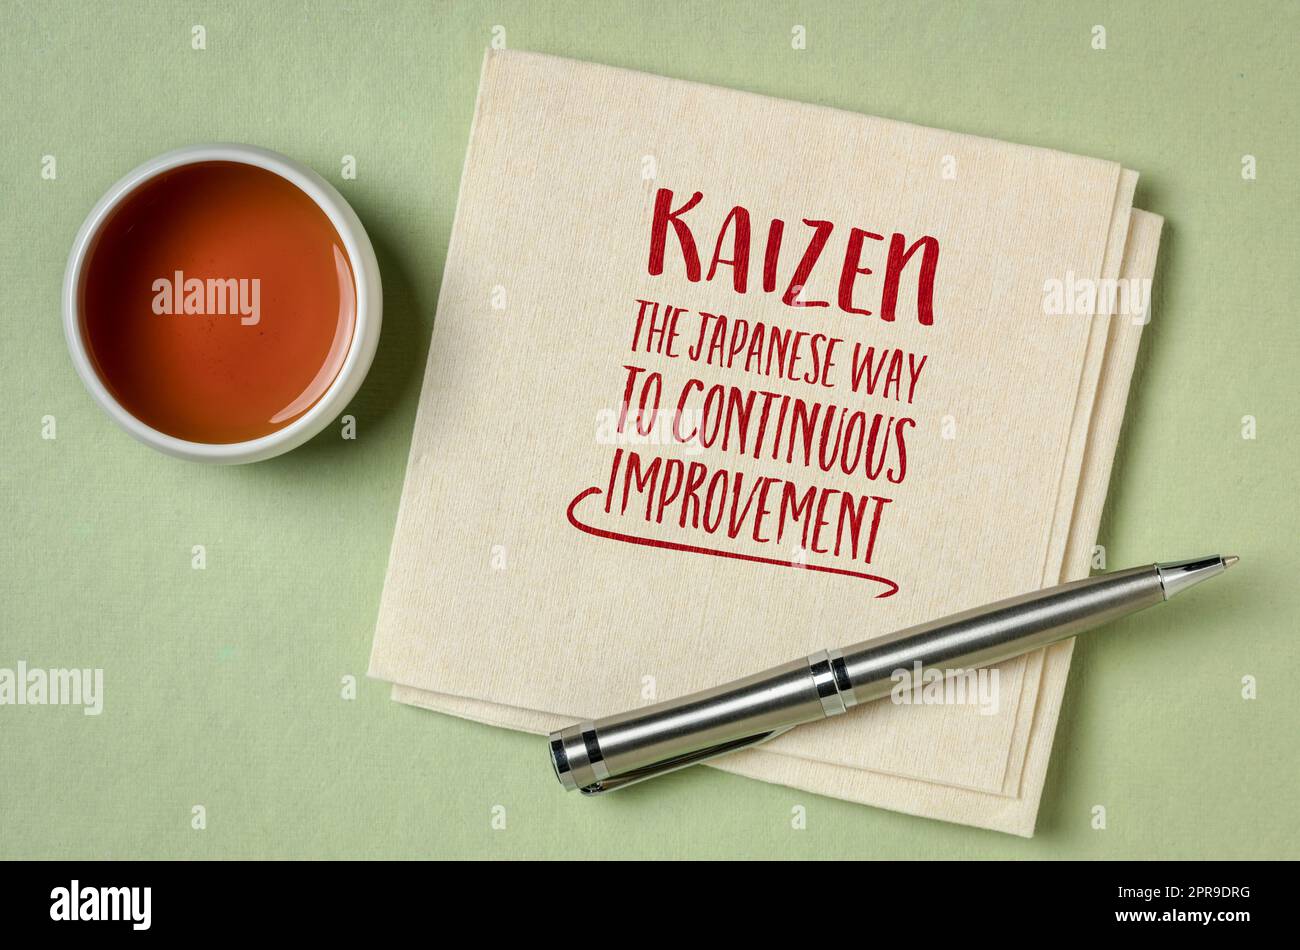 kaizen - Japanisches Konzept der kontinuierlichen Verbesserung, inspirierende Note auf einer Serviette mit Tee, geschäftlicher und persönlicher Entwicklung Stockfoto